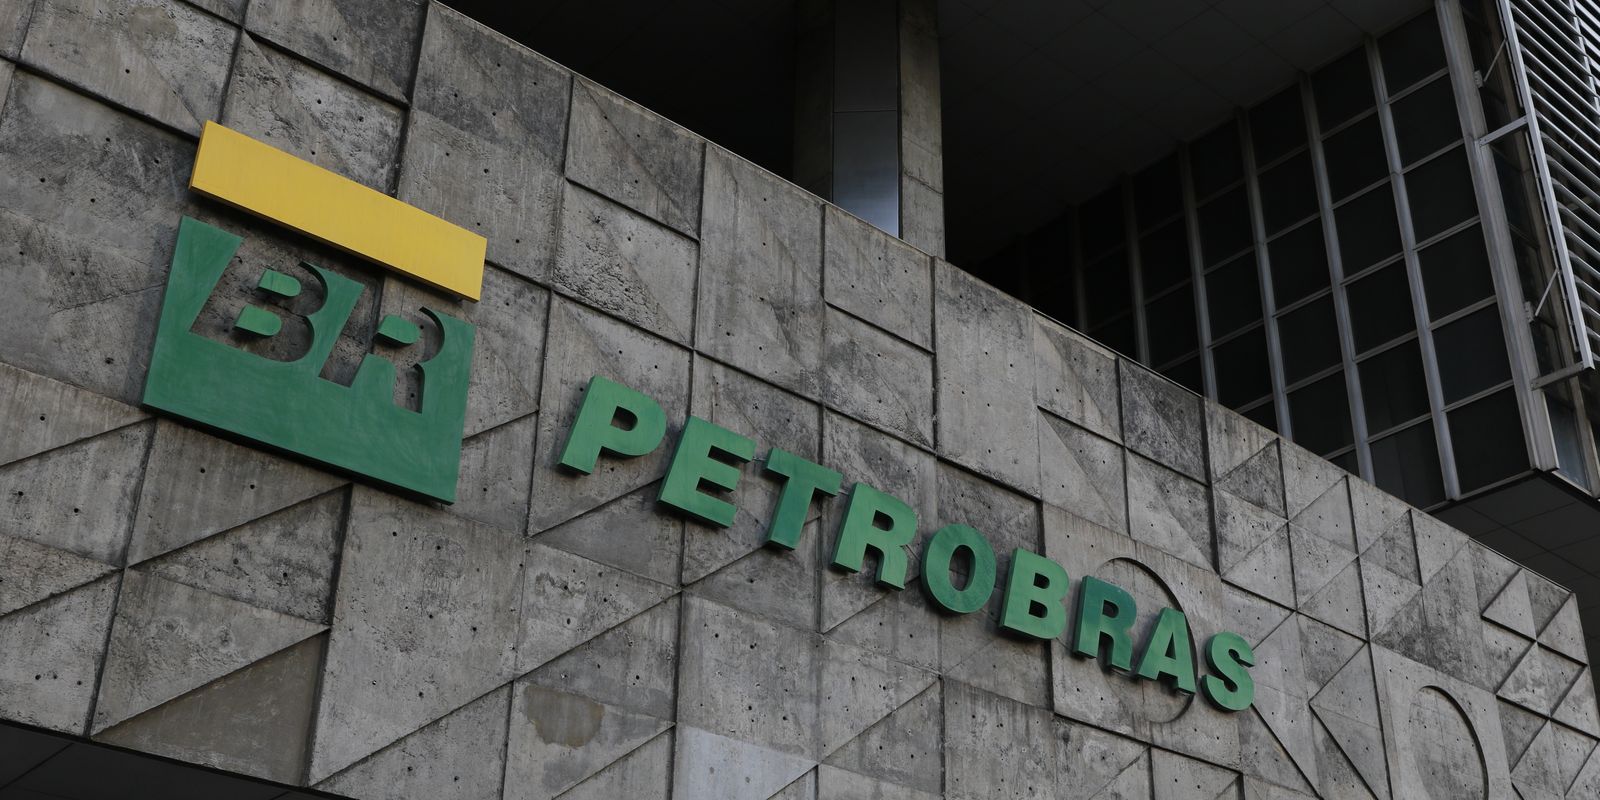 Petrobras vai revisar processos de desinvestimentos